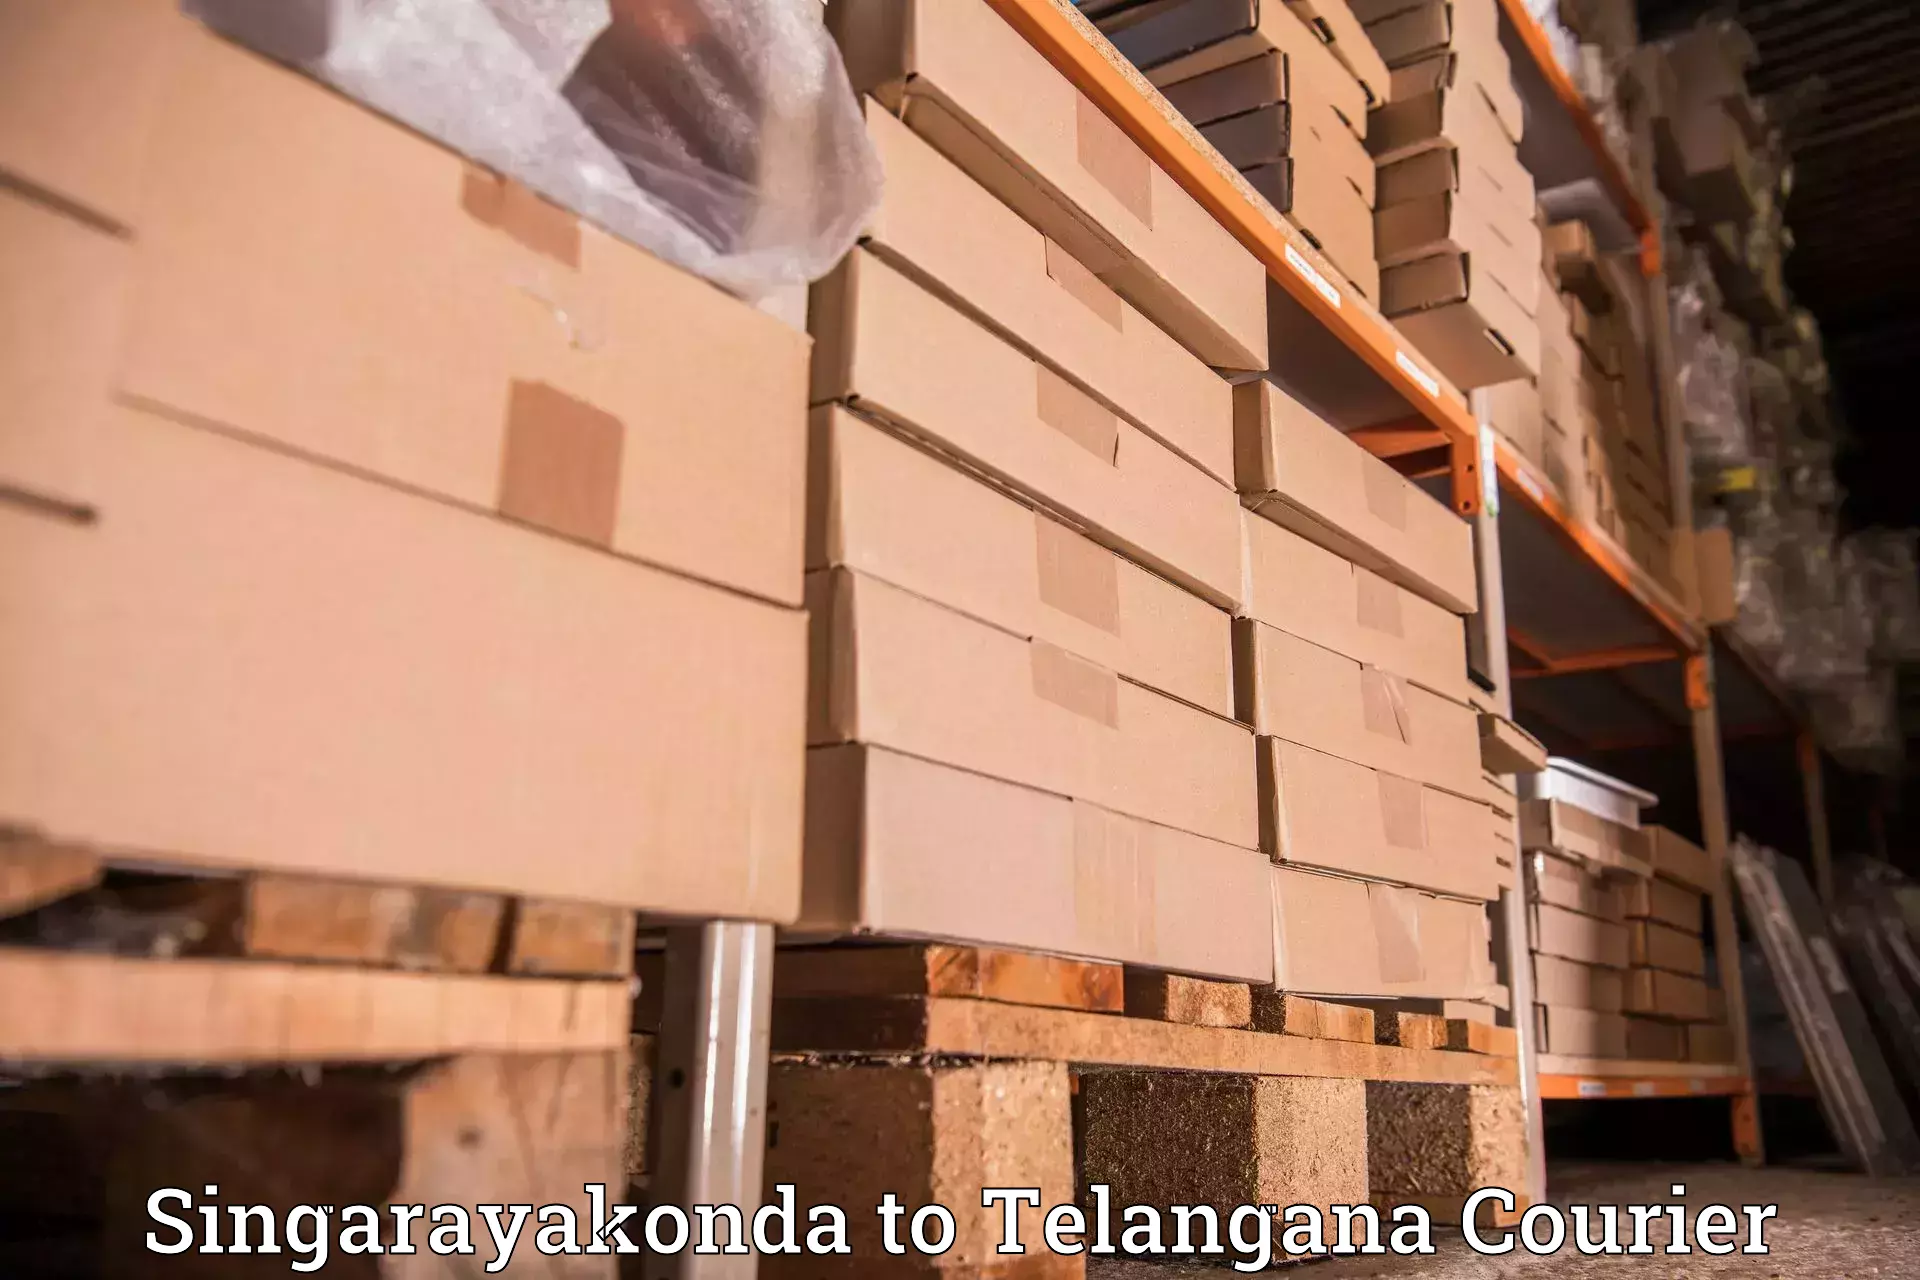 Global freight services Singarayakonda to Mahadevpur